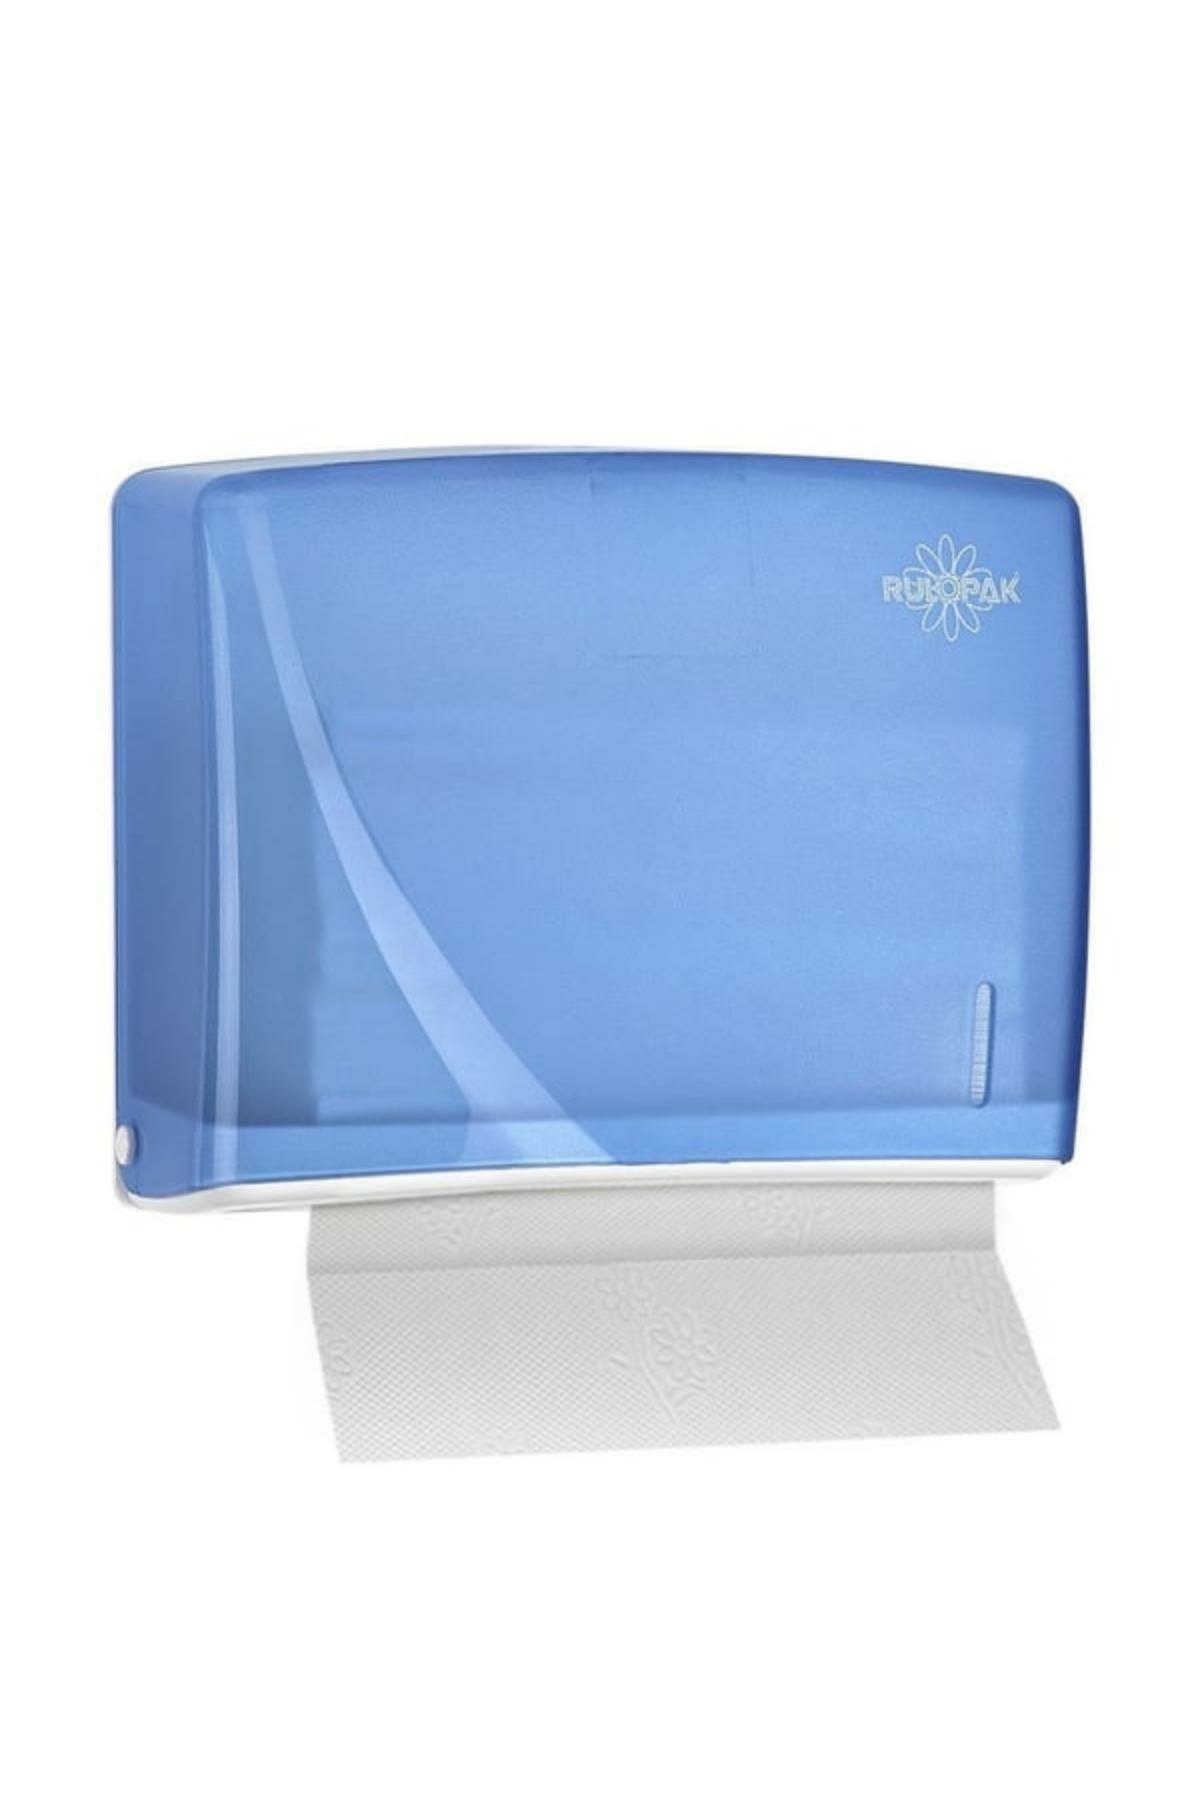 Rulopak Modern Z Katlama Kağıt Havlu Dispenseri 200'Lü Transparan Mavi